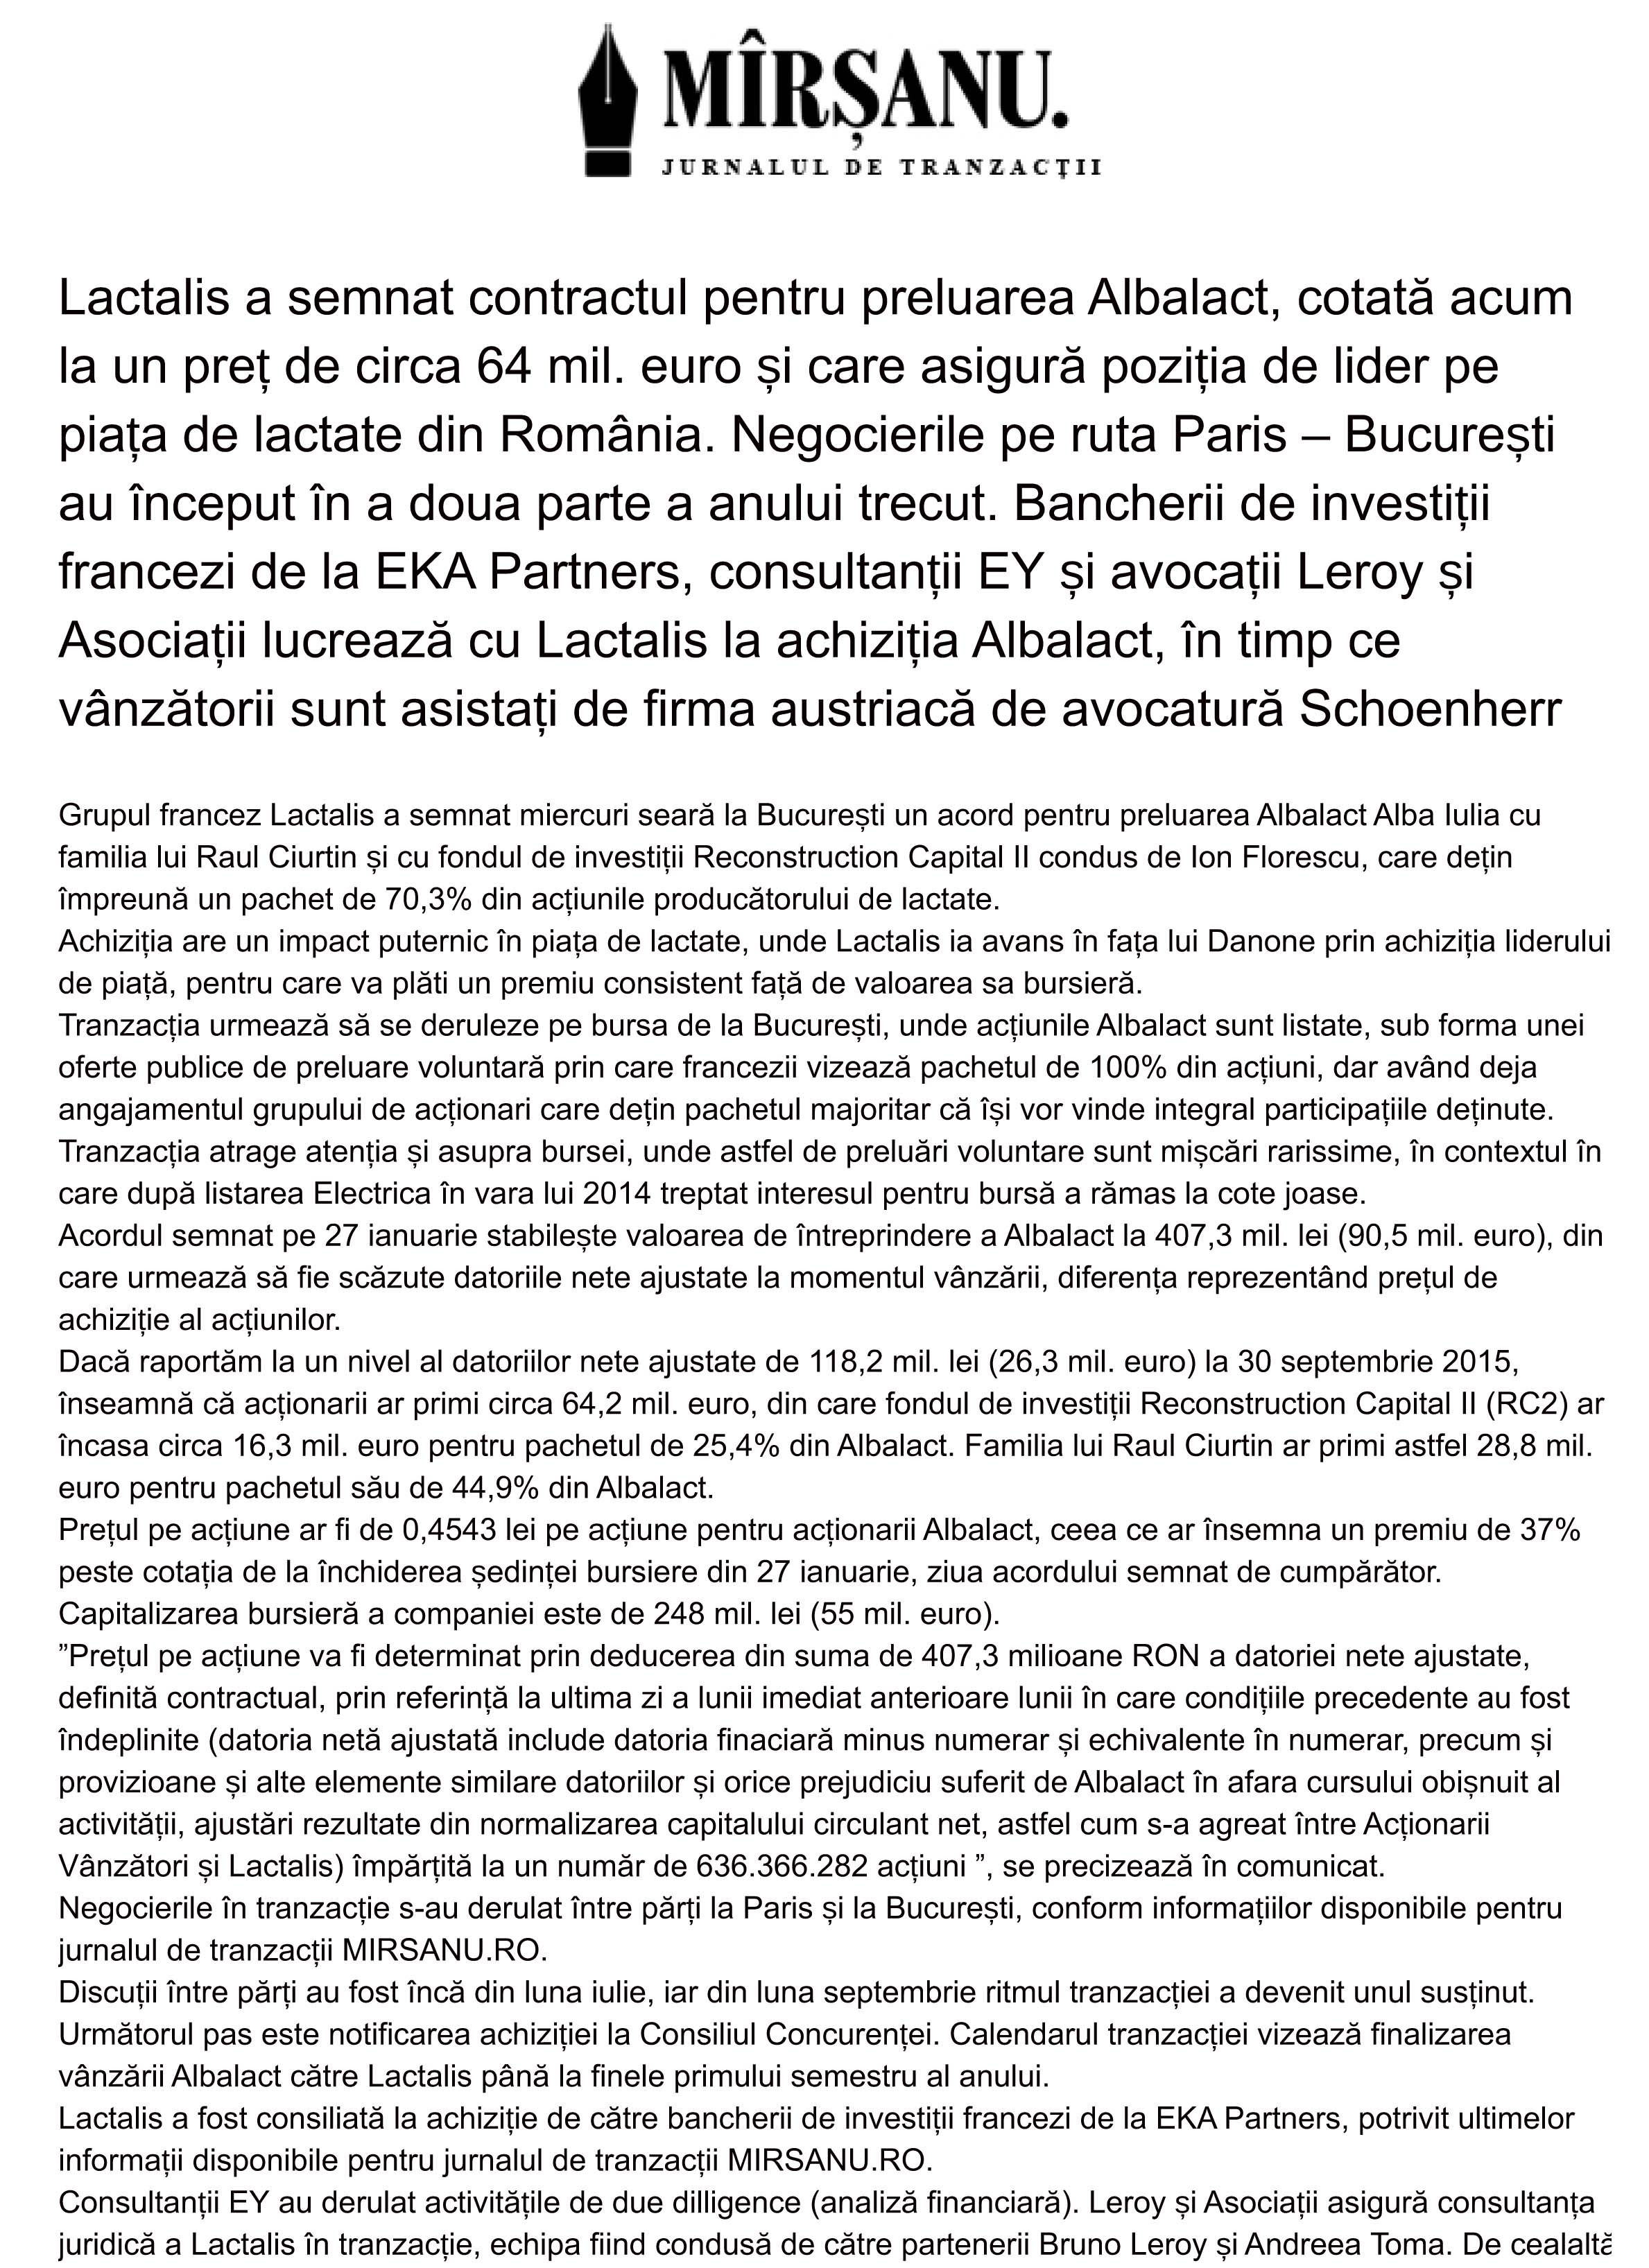 Lactalis a semnat contractul pentru preluarea Albalact cotată acum la un preț de circa 64 mil euro